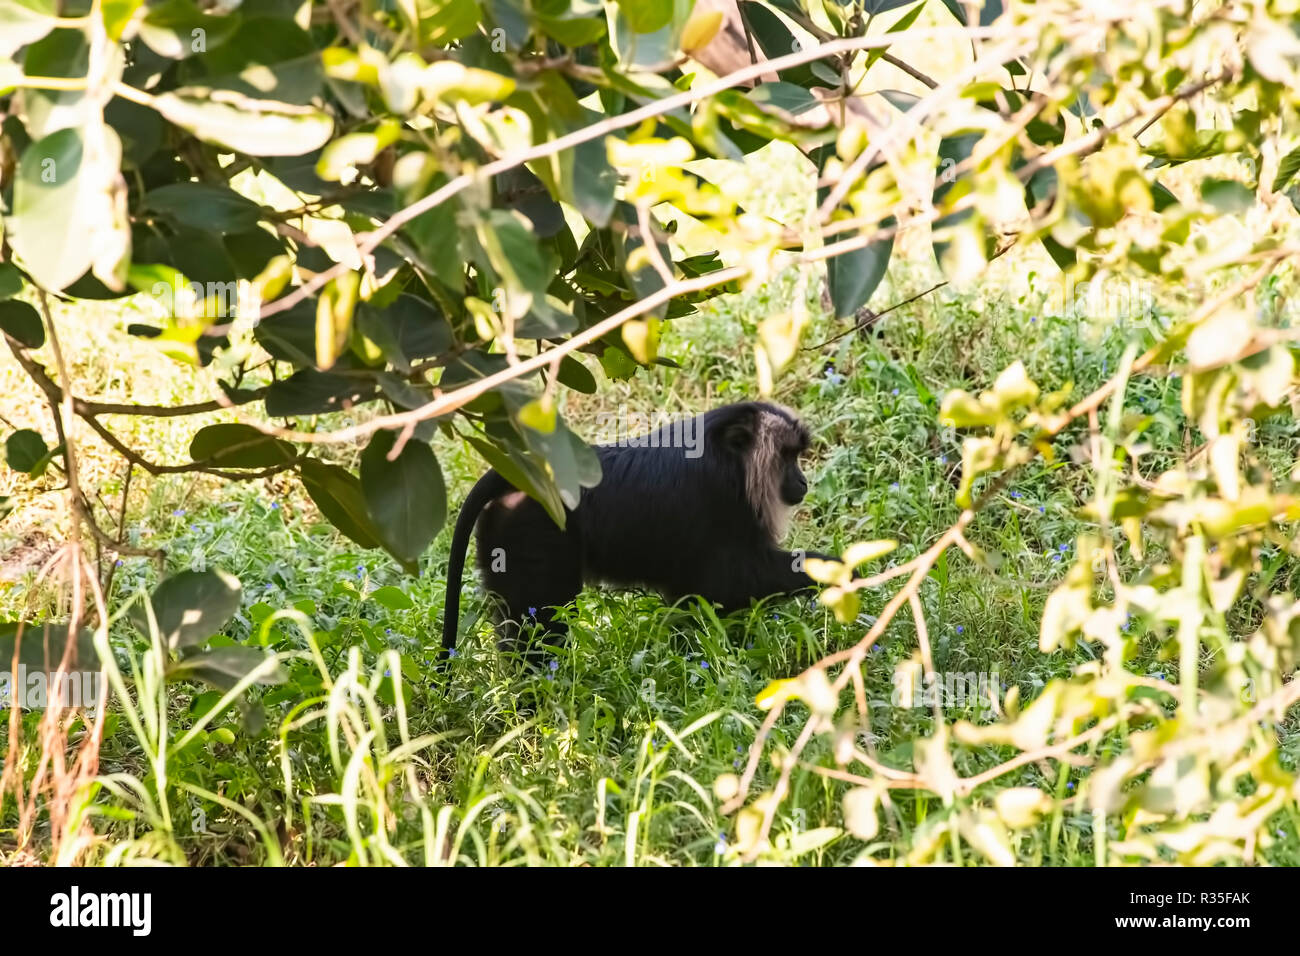 Black Baboon,strolling,in garden,open space, Delhi zoo, Stock Photo